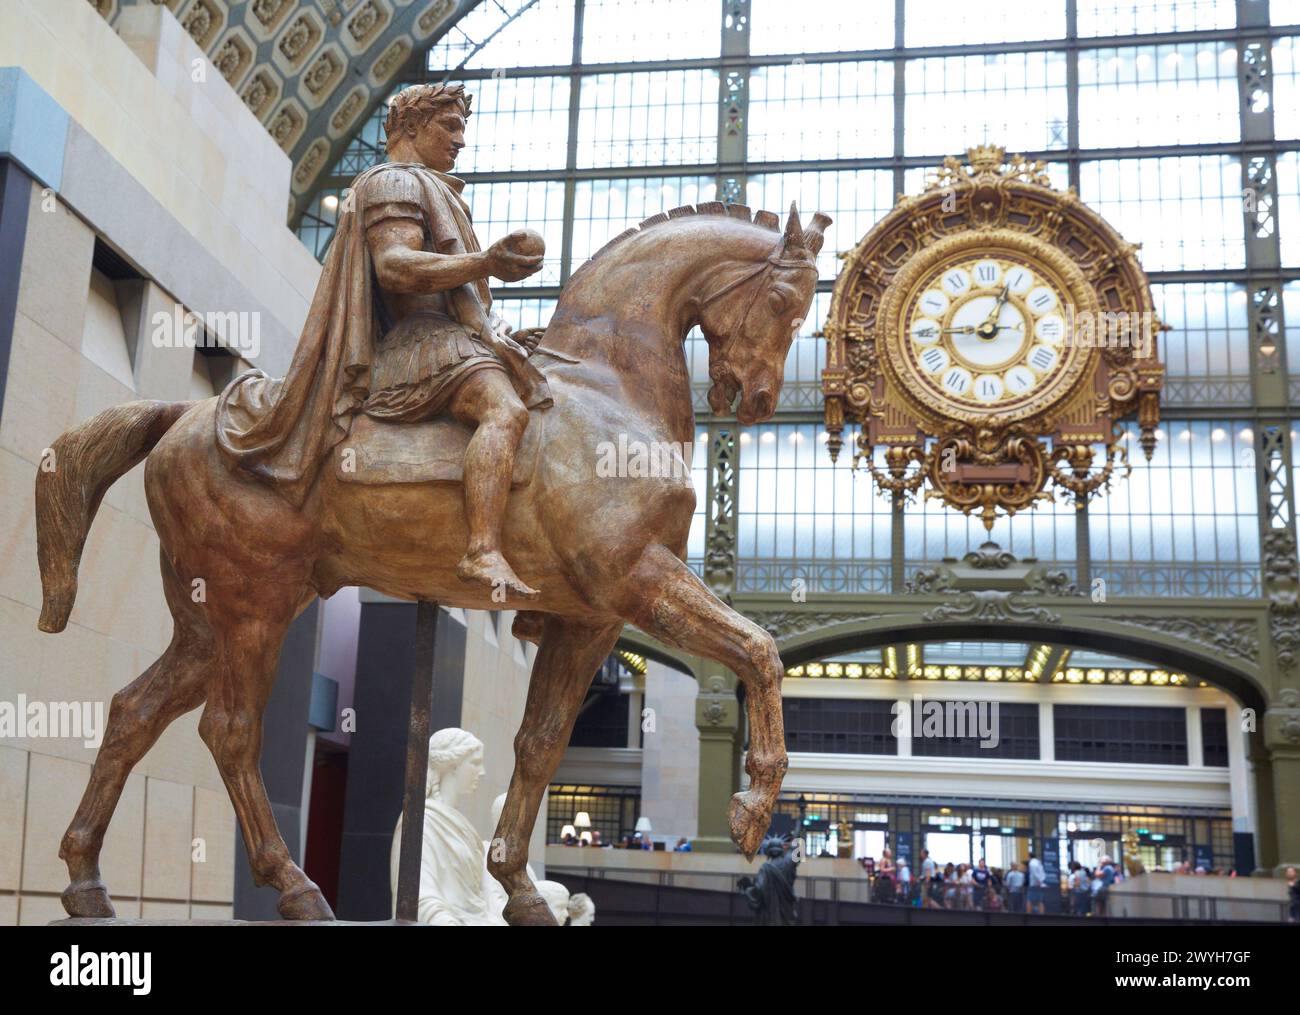 'Napoléon Ier en empereur romain' sculpture by Antoine-Louis Barye. Musée d'Orsay. Orsay Museum. Paris. France. Stock Photo